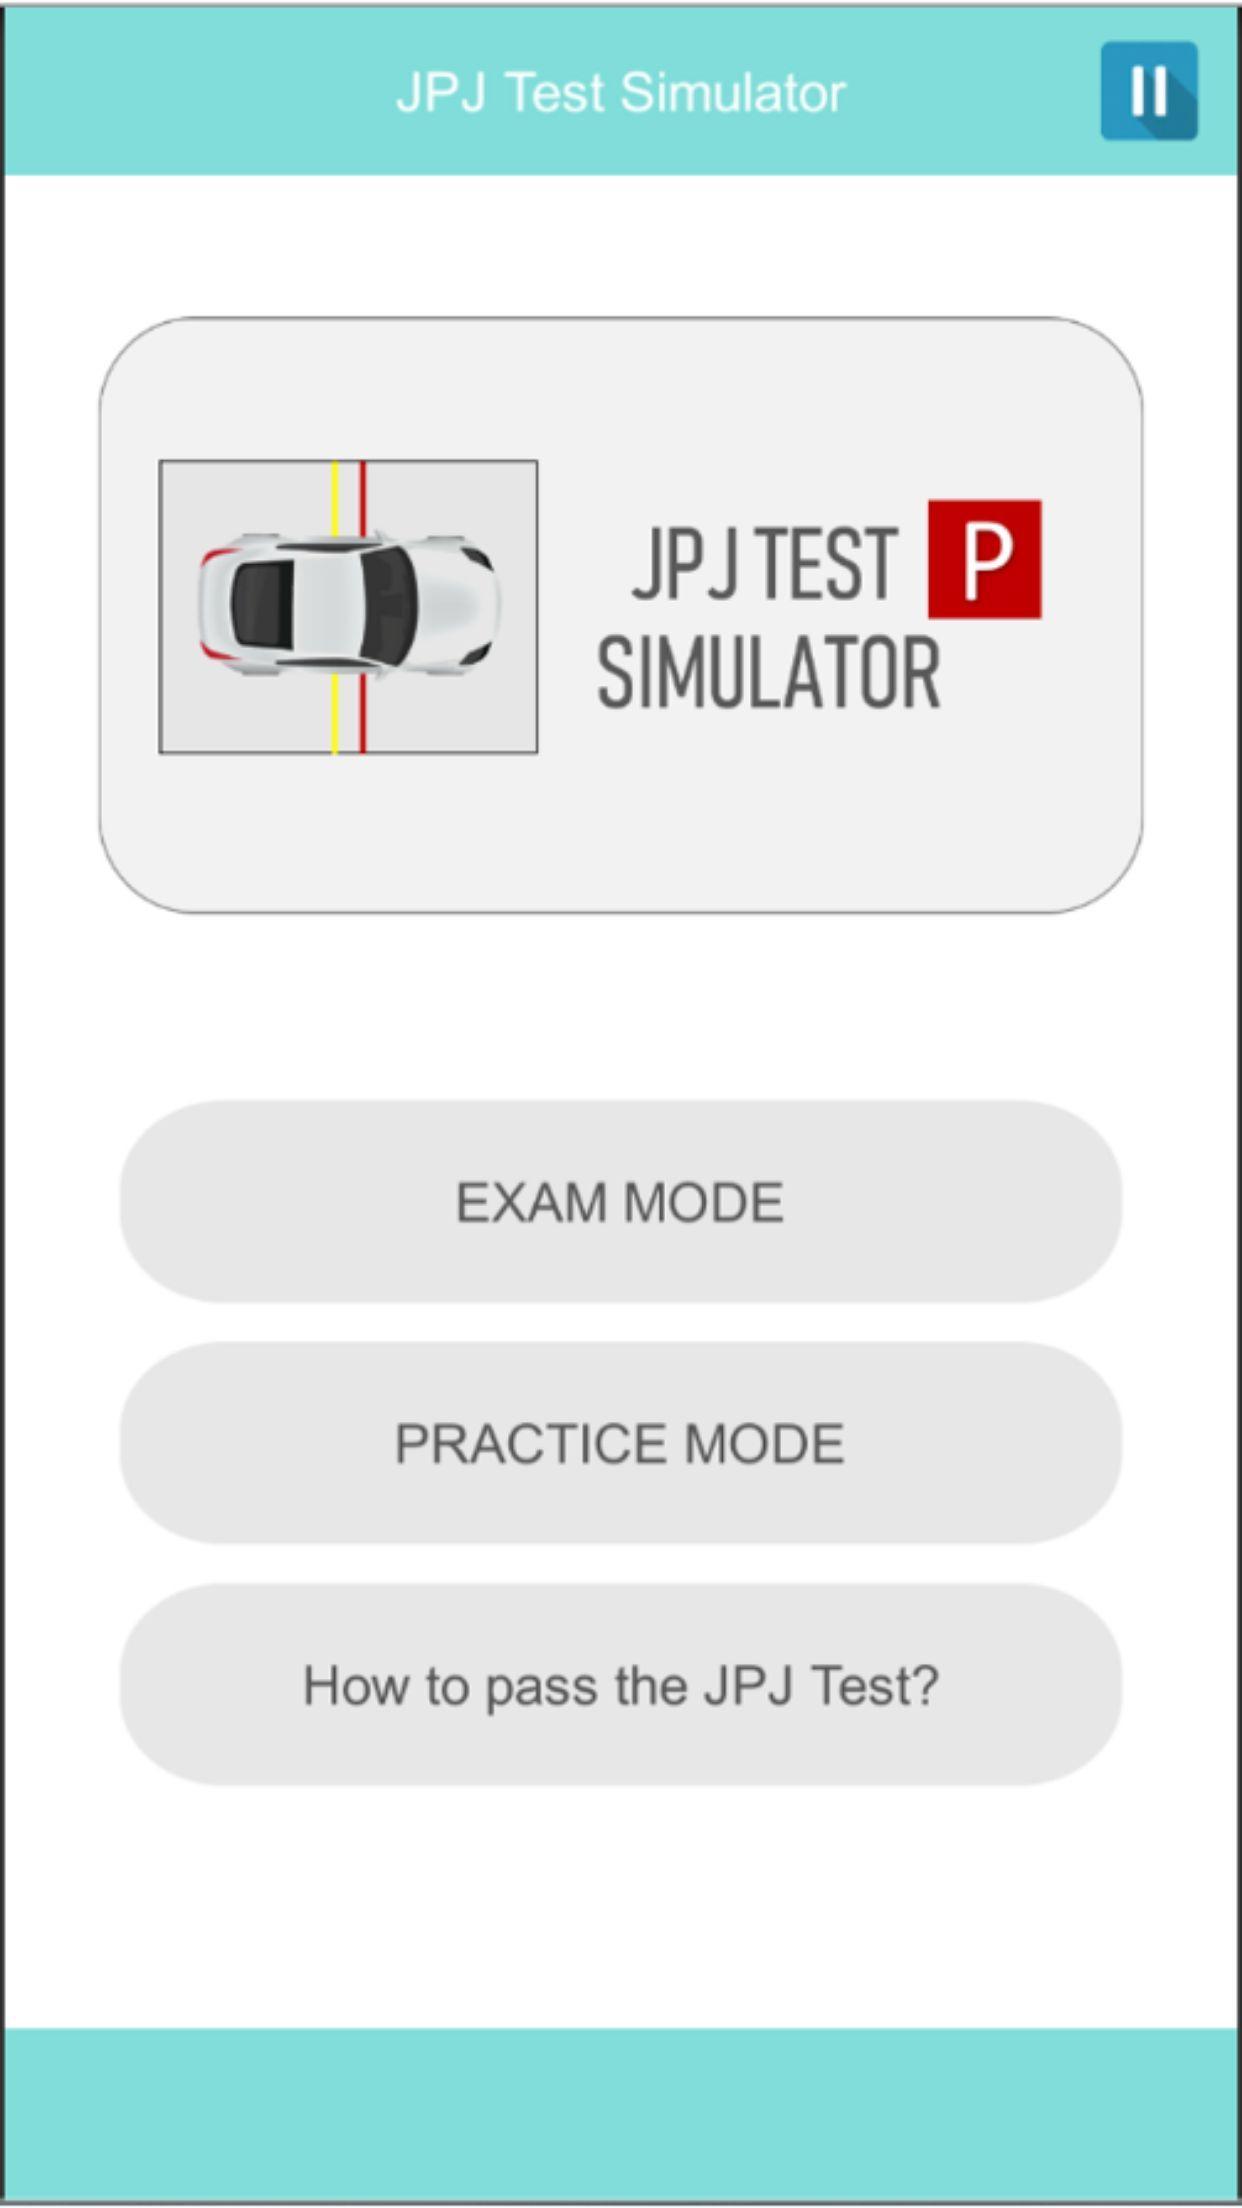 Mysekolah Memandu Jpj Test Simulator Kpp Test For Android Apk Download - login to roblox fast food simulator pass this quiz and get